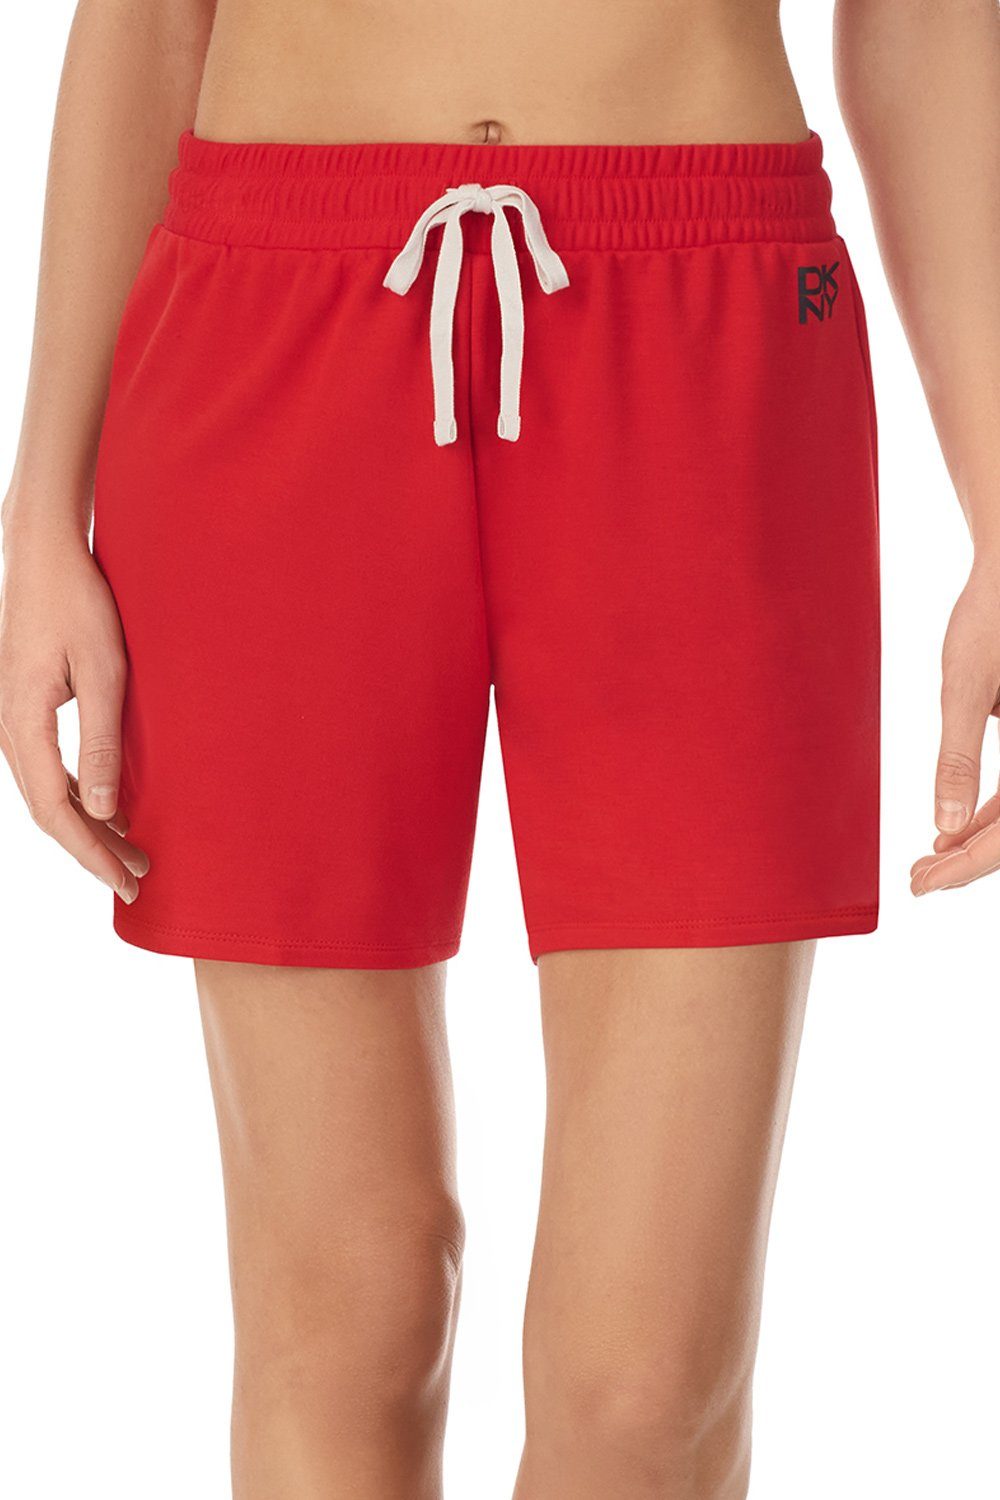 Lounge DKNY Boxer YI3522534 Shorts